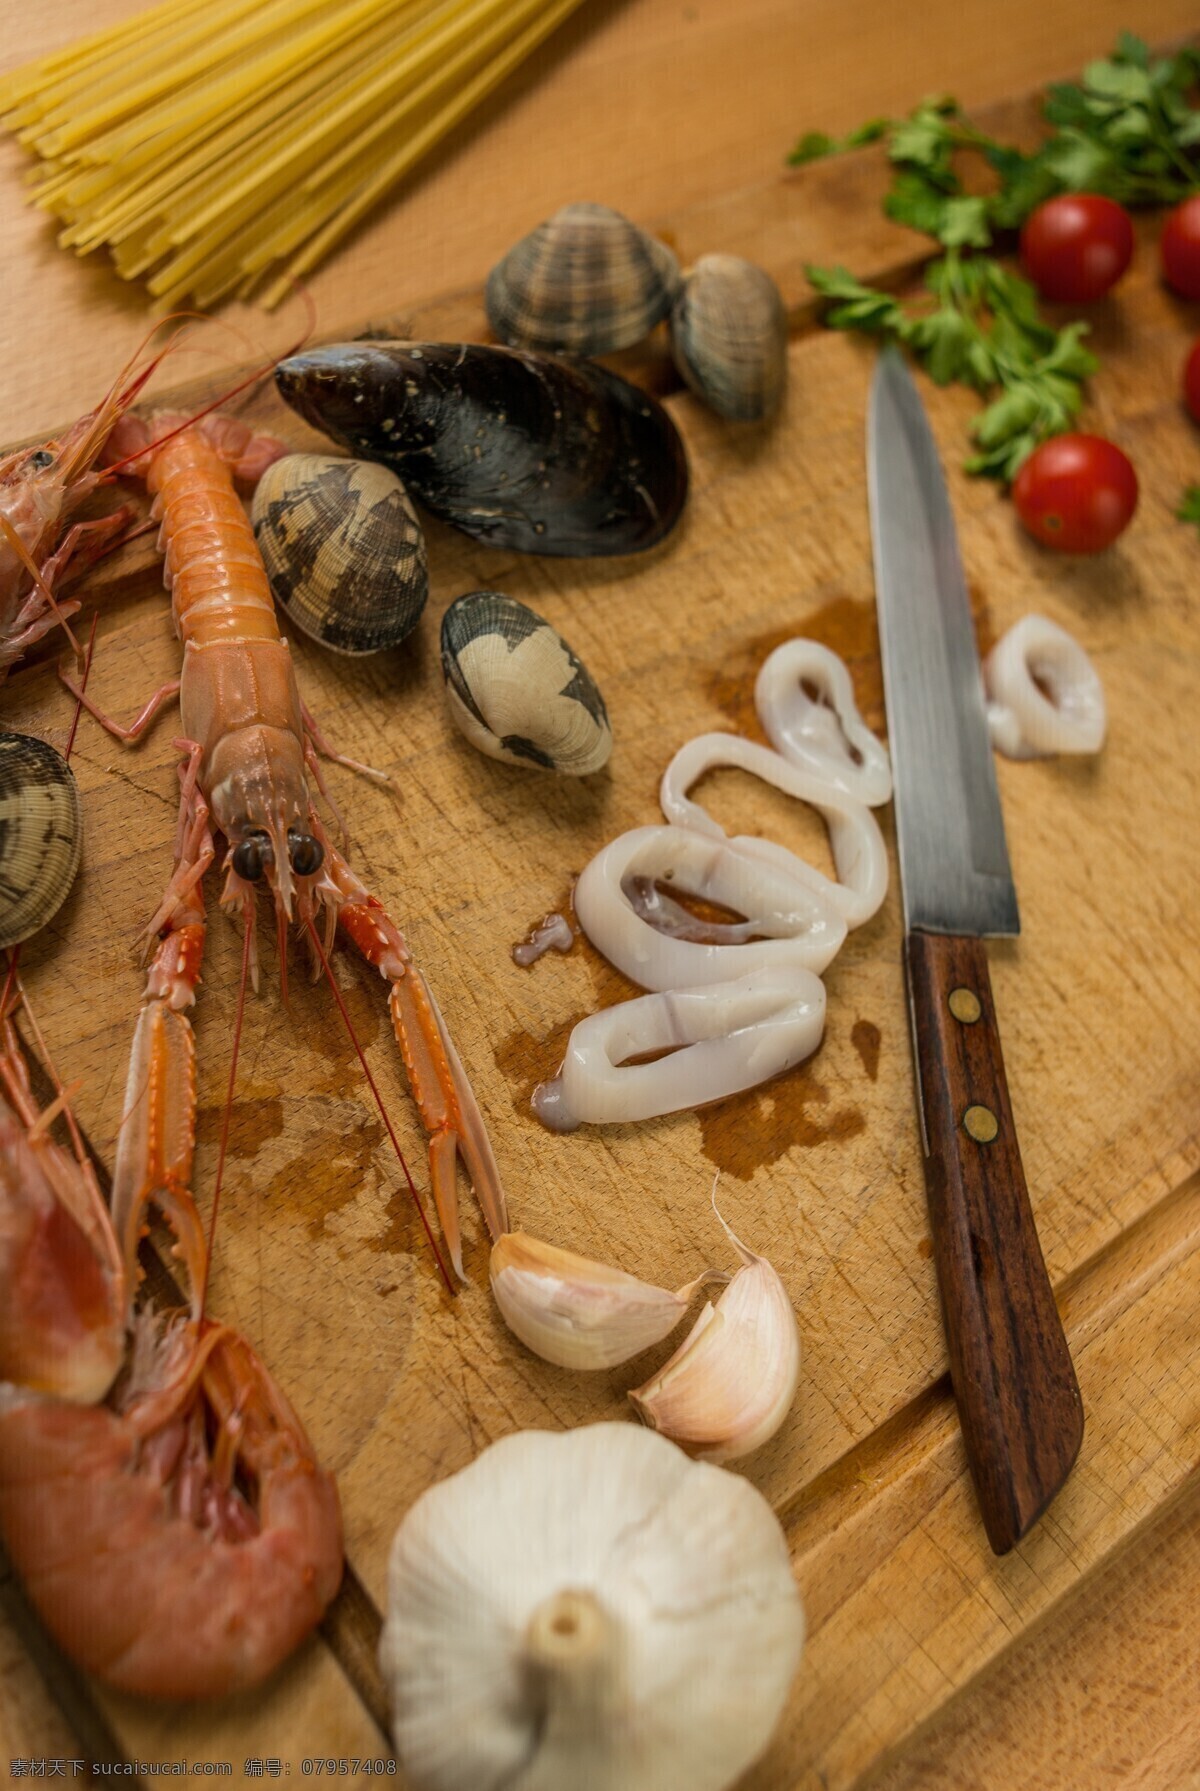 切 尤鱼 虾 花甲 大蒜 调料 诱人美食 食物原料 食材原料 食物摄影 美食图片 餐饮美食